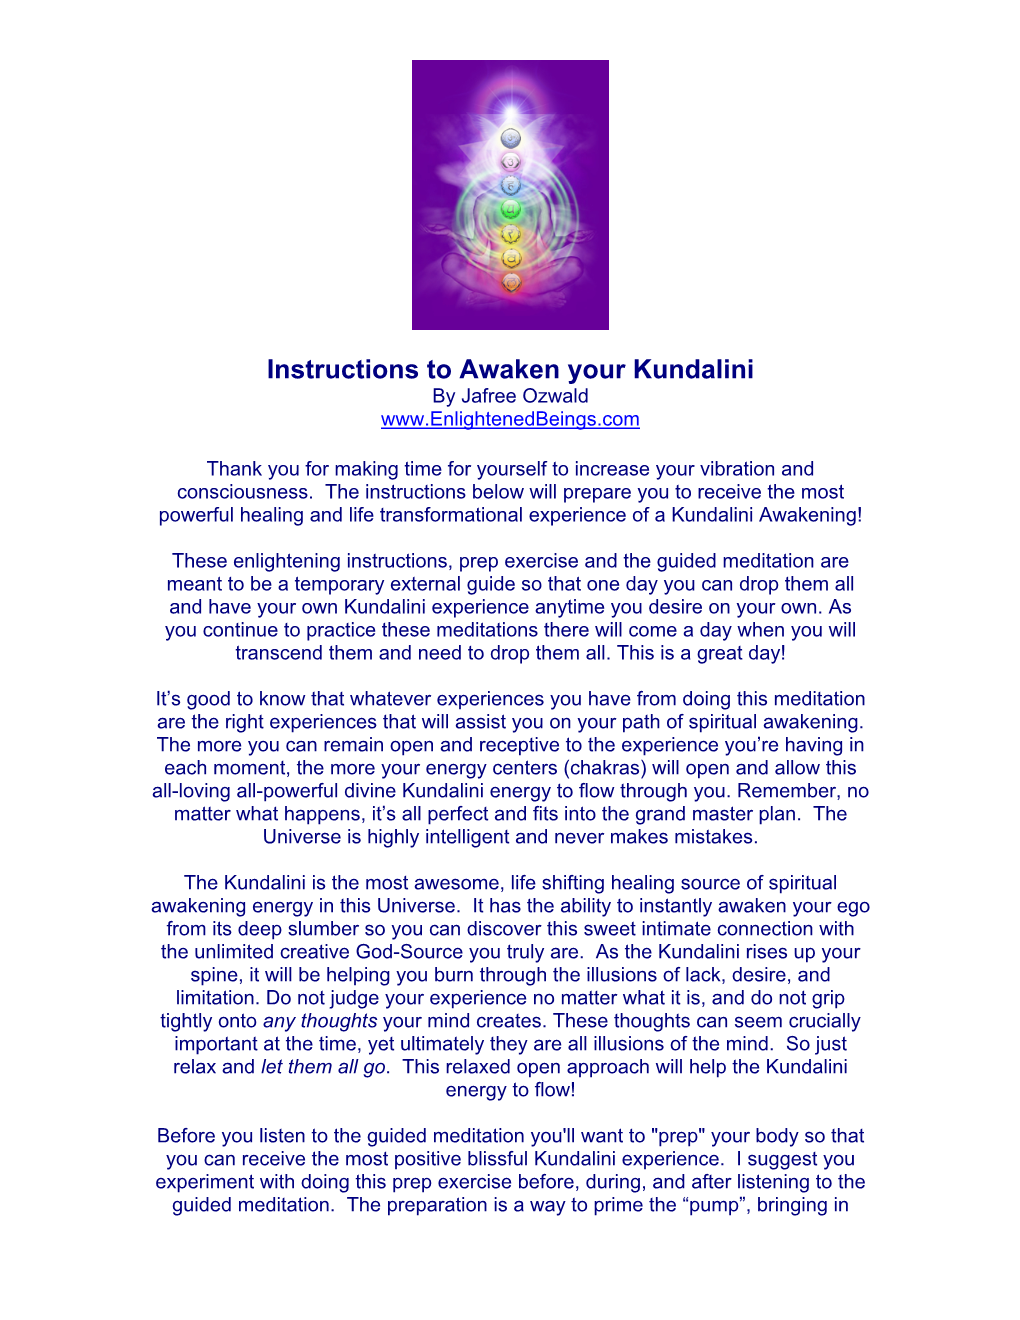 Instructions to Awaken Your Kundalini by Jafree Ozwald